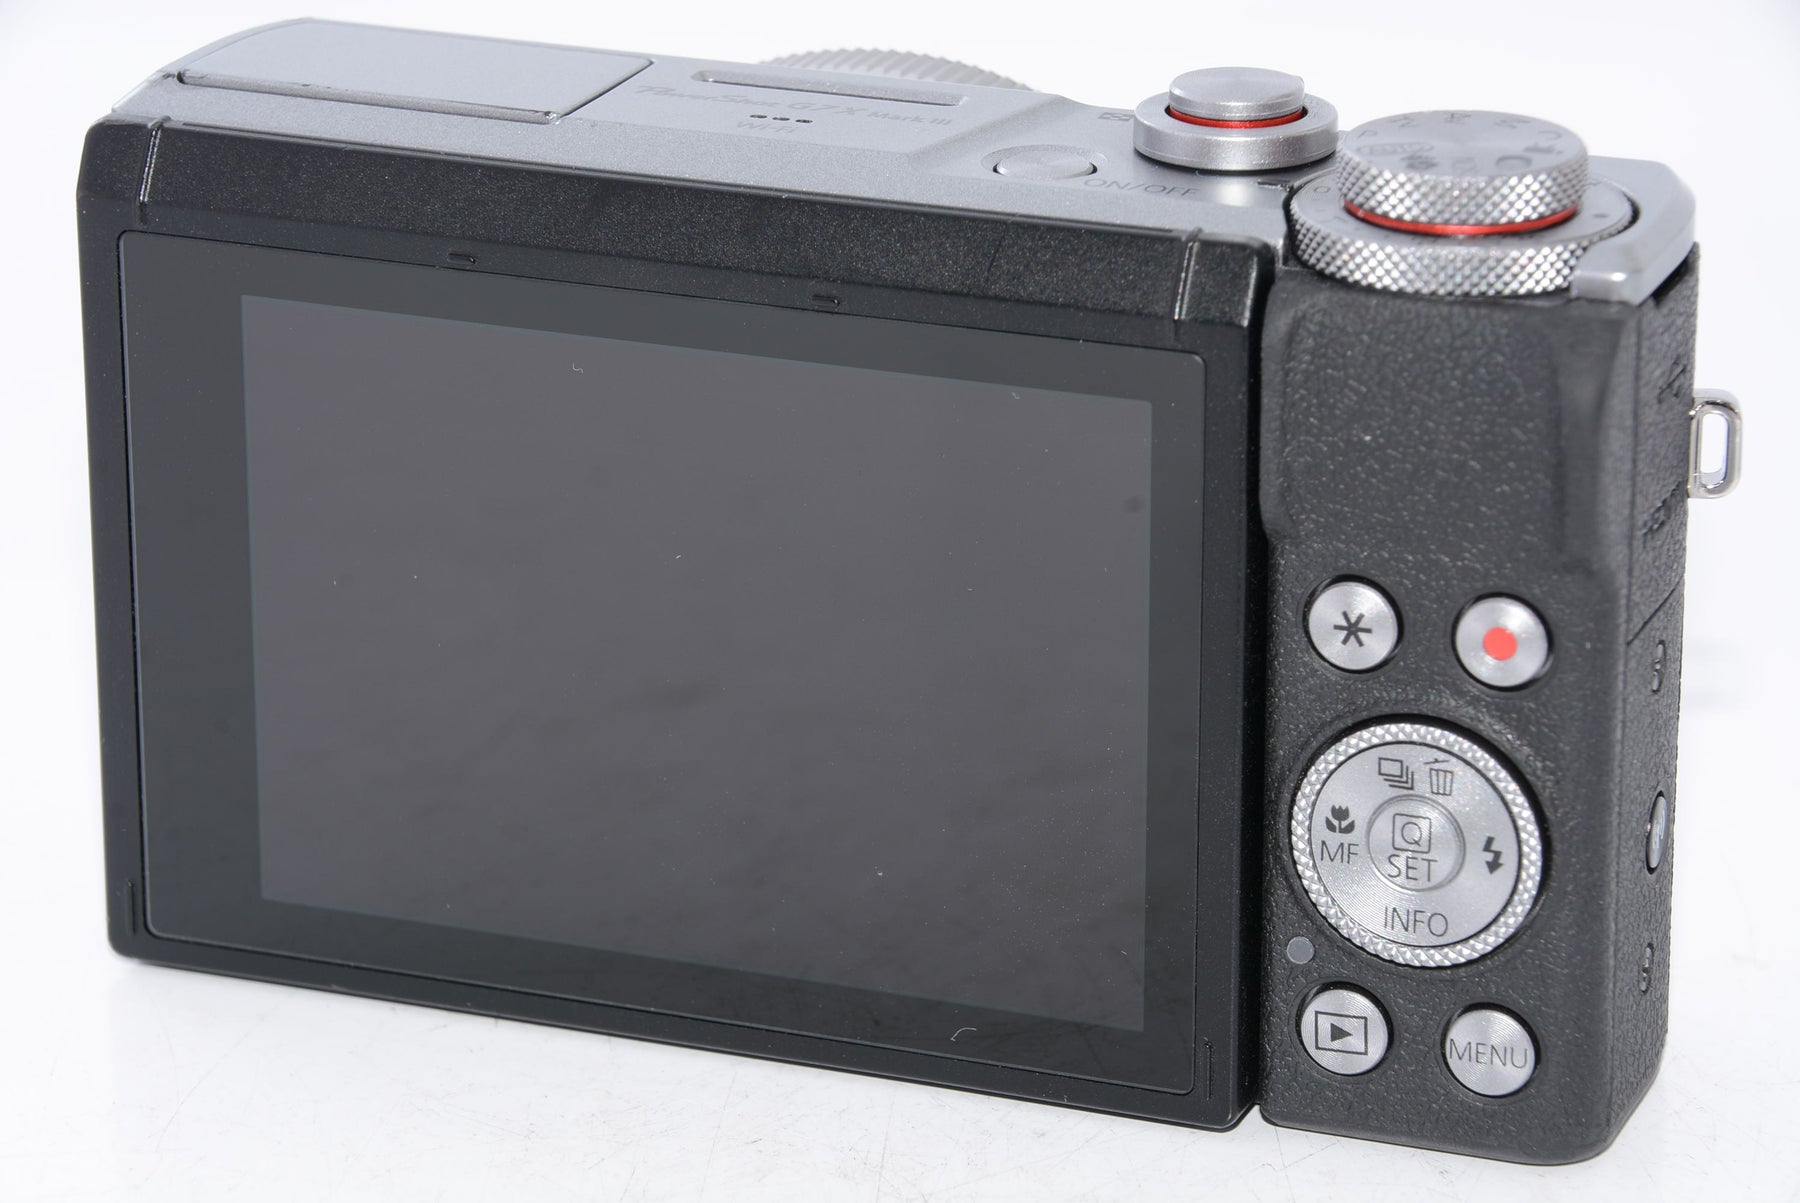 外観特上級】Canon コンパクトデジタルカメラ PowerShot G7 X Mark III シルバー 1.0型センサー/F1.8レン